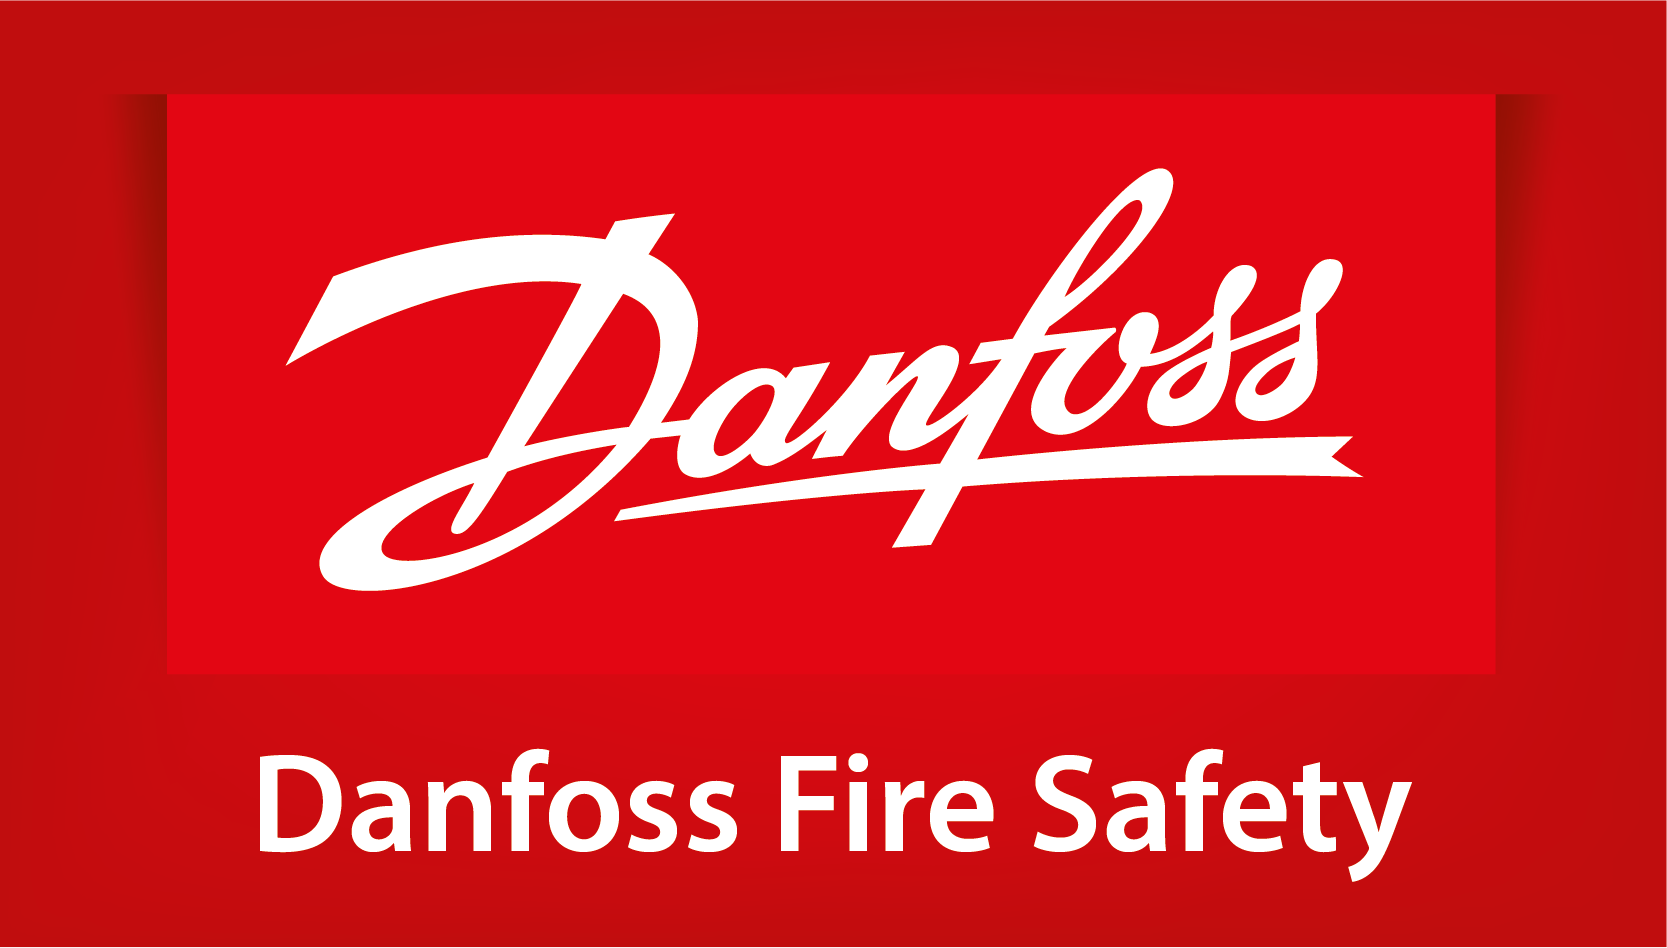 DANFOSS FIRE SAFETY / POLYTECH